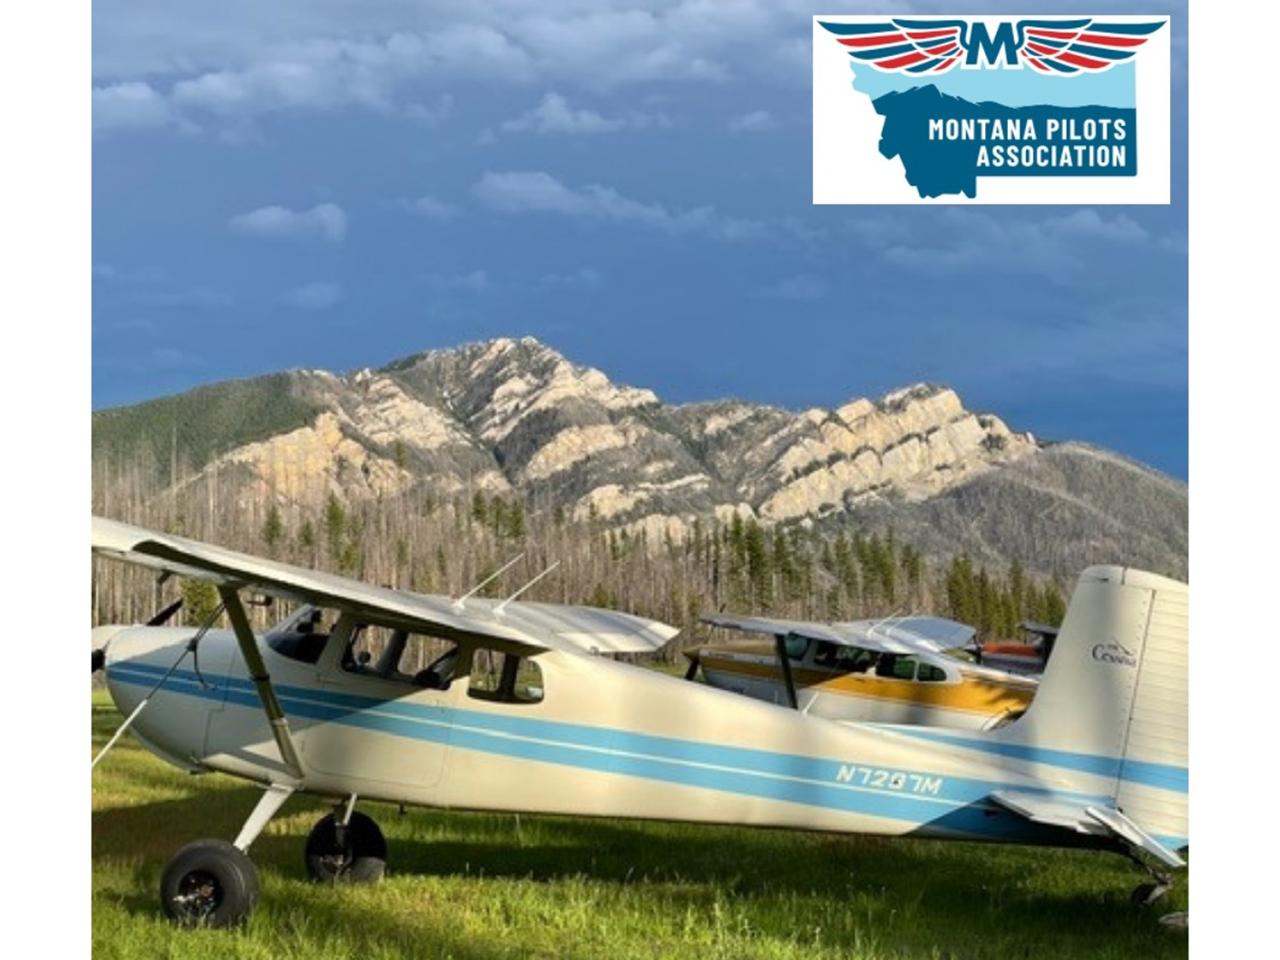 Join the Montana Pilots Association - Montana Pilots Association